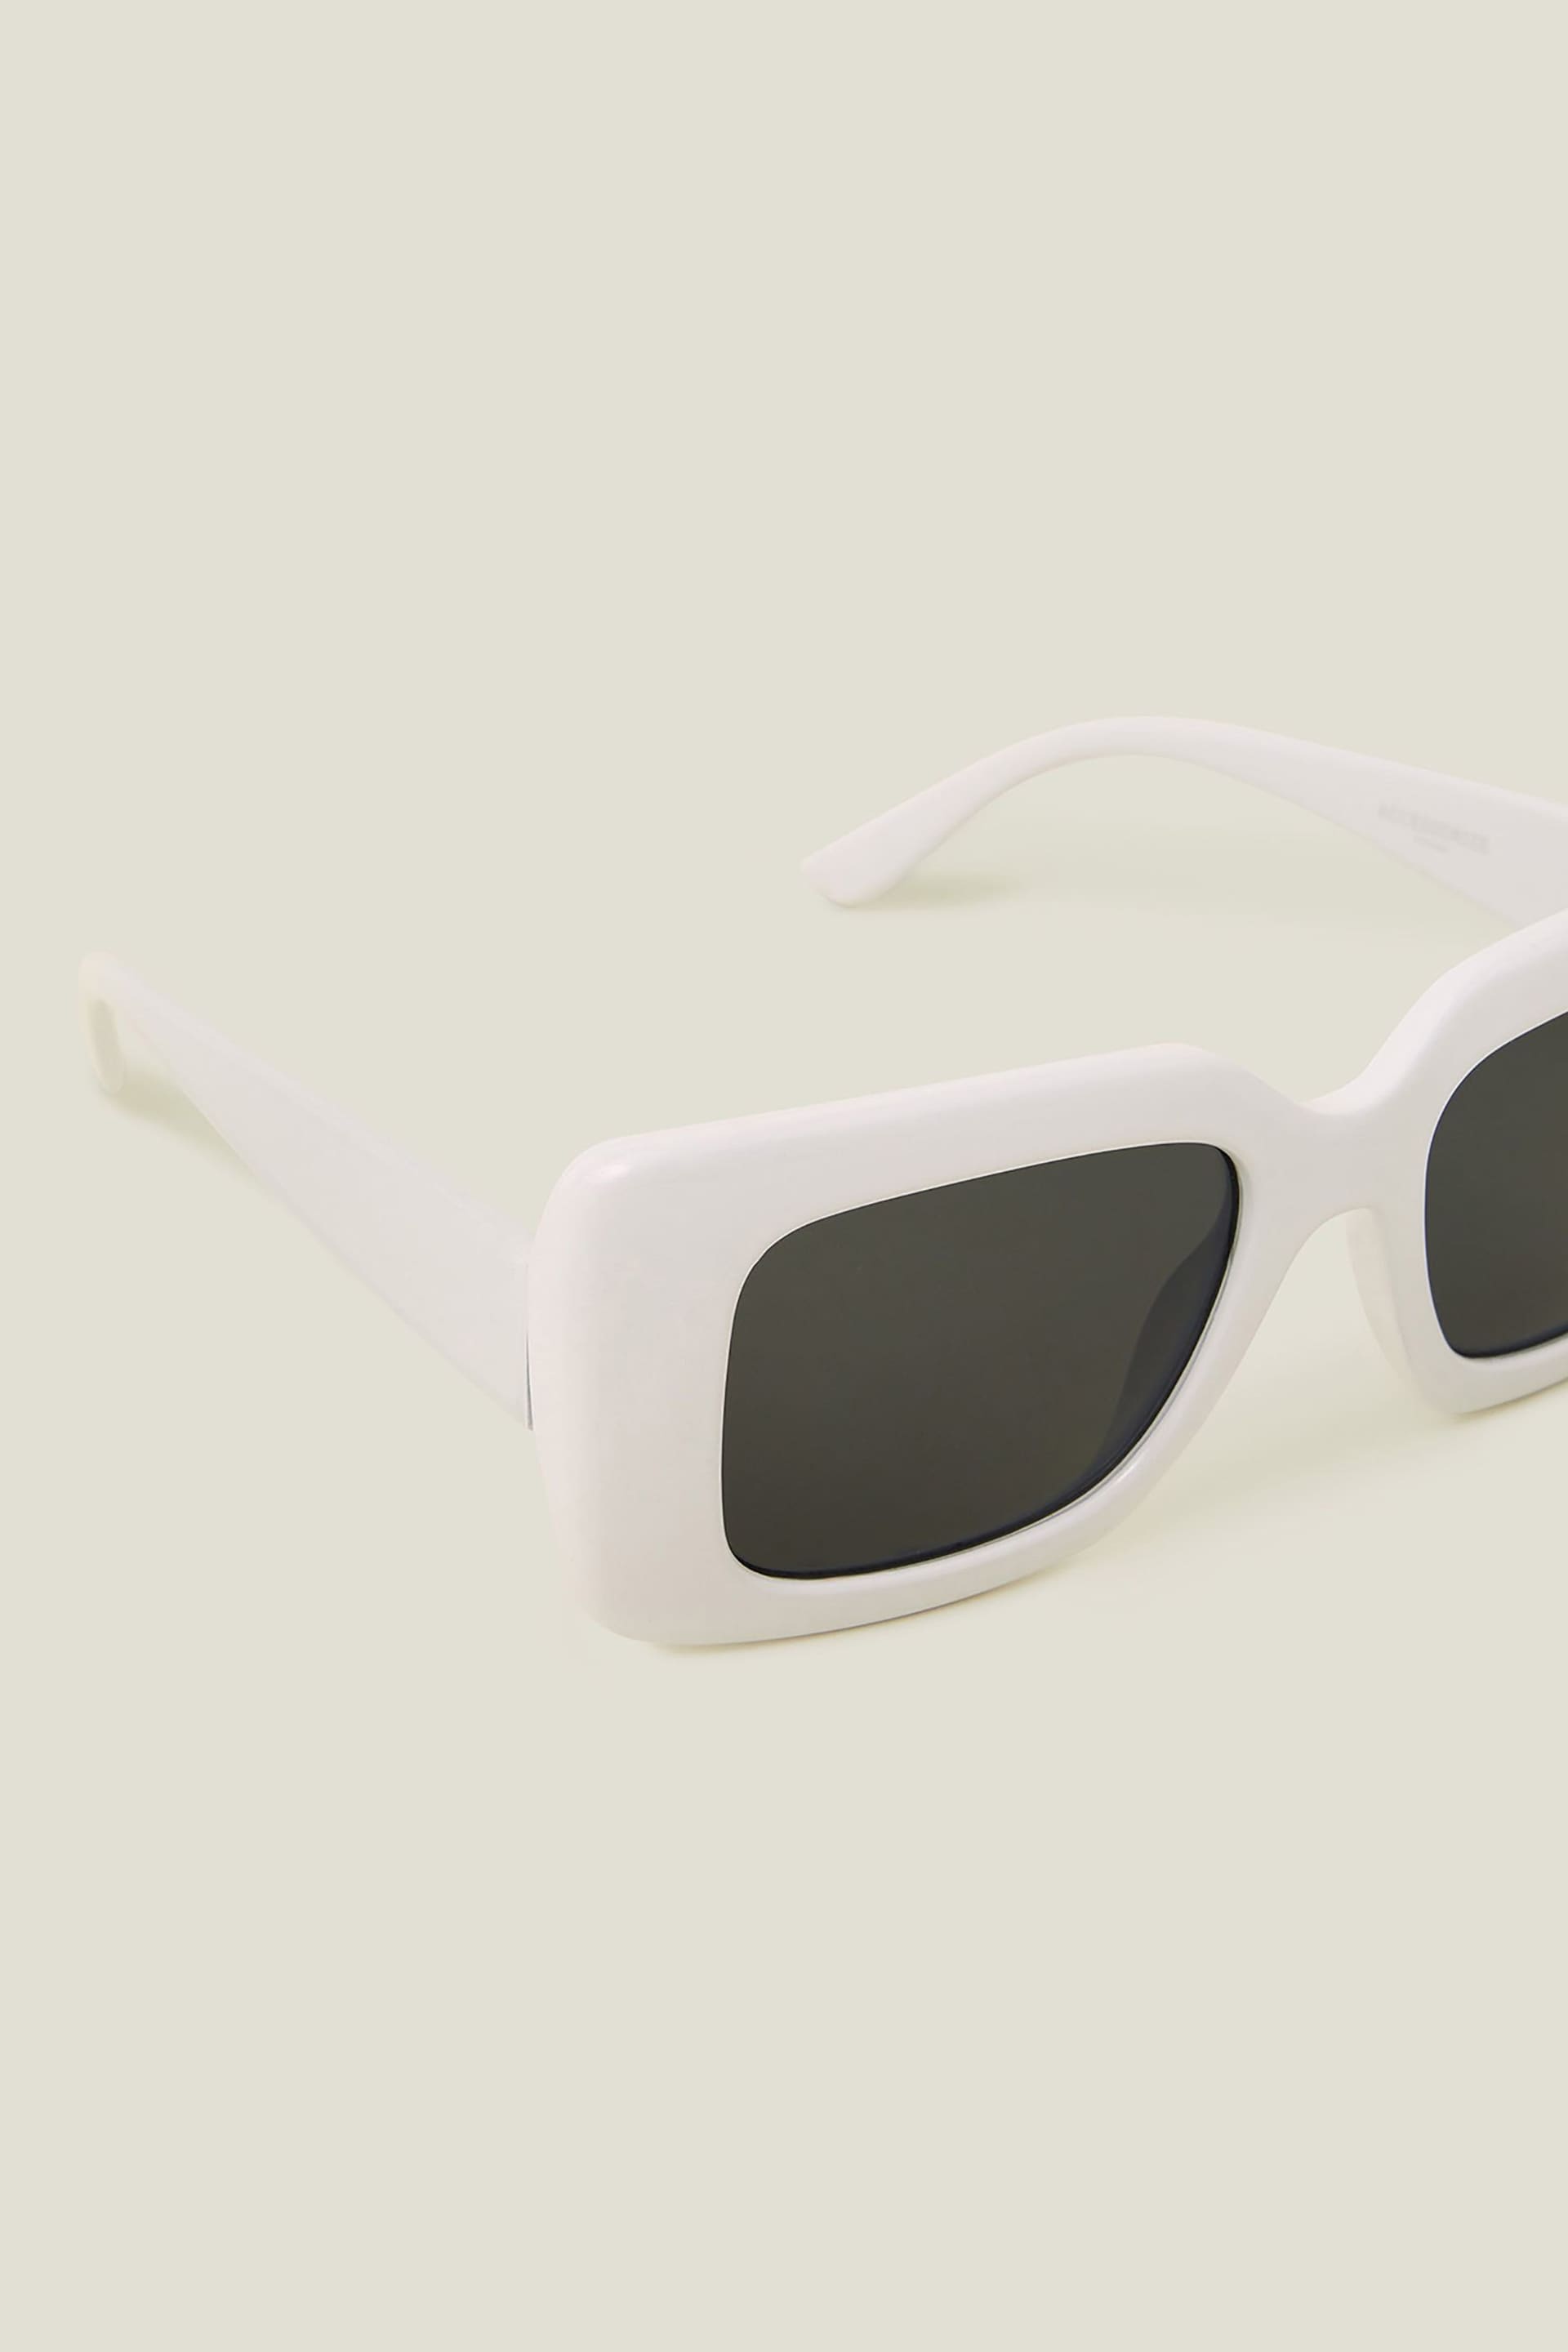 Accessorize White Soft Square Frame Sunglasses - Image 2 of 3